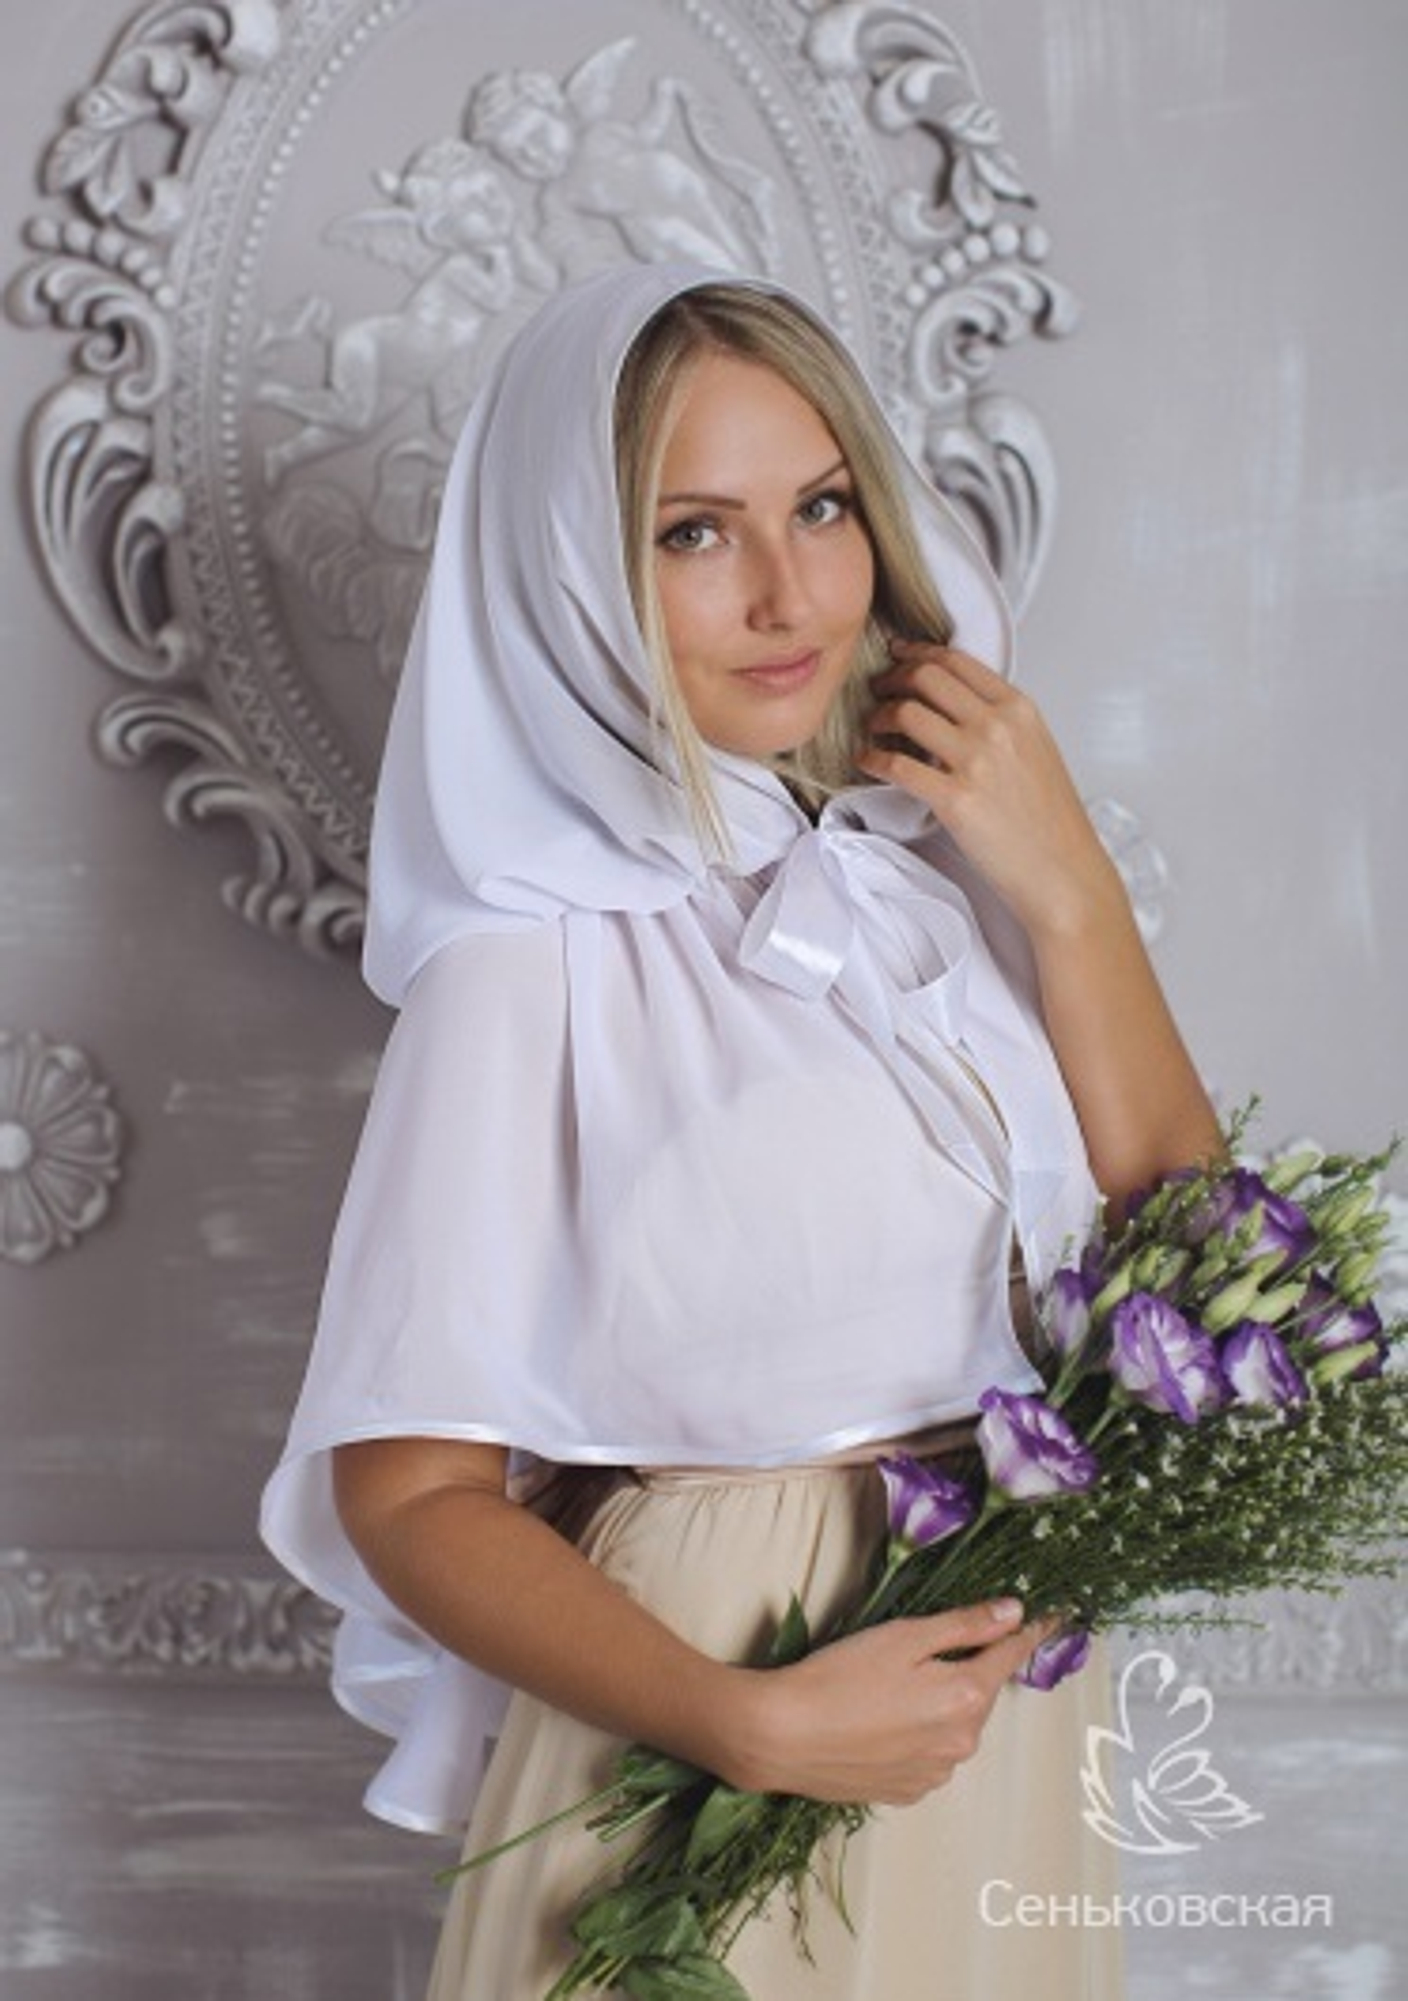 Одежда для православных: как одеваться в храм, на крестины, венчание, отпевание